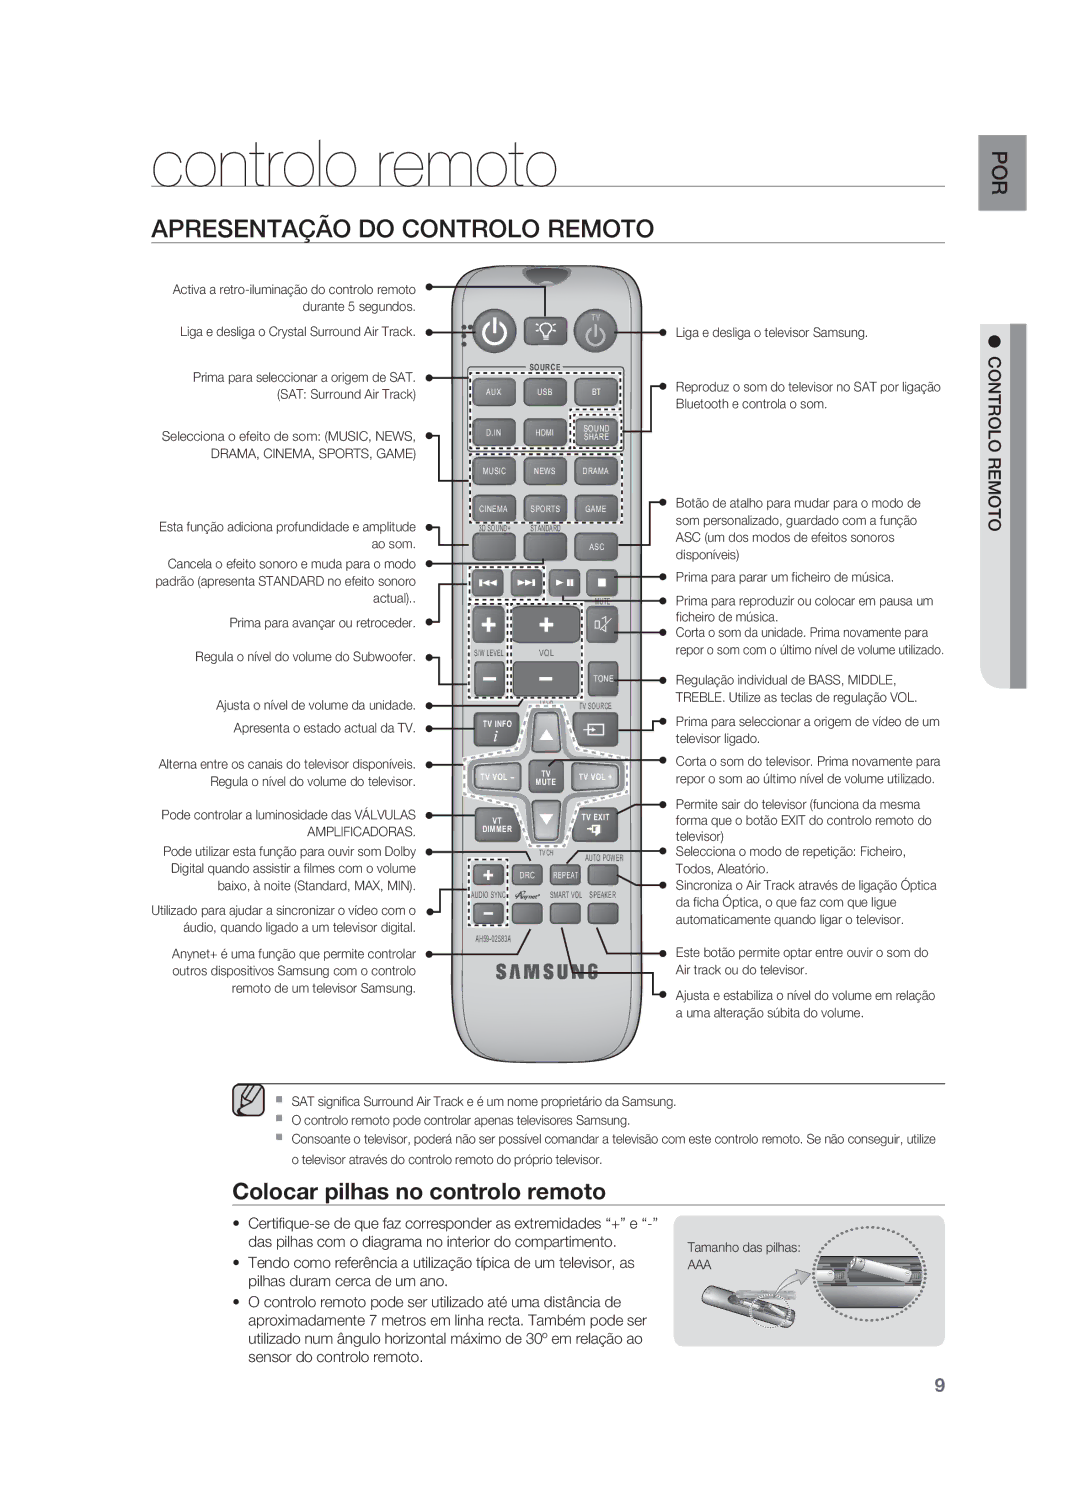 Samsung HW-F850/ZF manual Controlo remoto, Apresentação do Controlo Remoto, Colocar pilhas no controlo remoto 